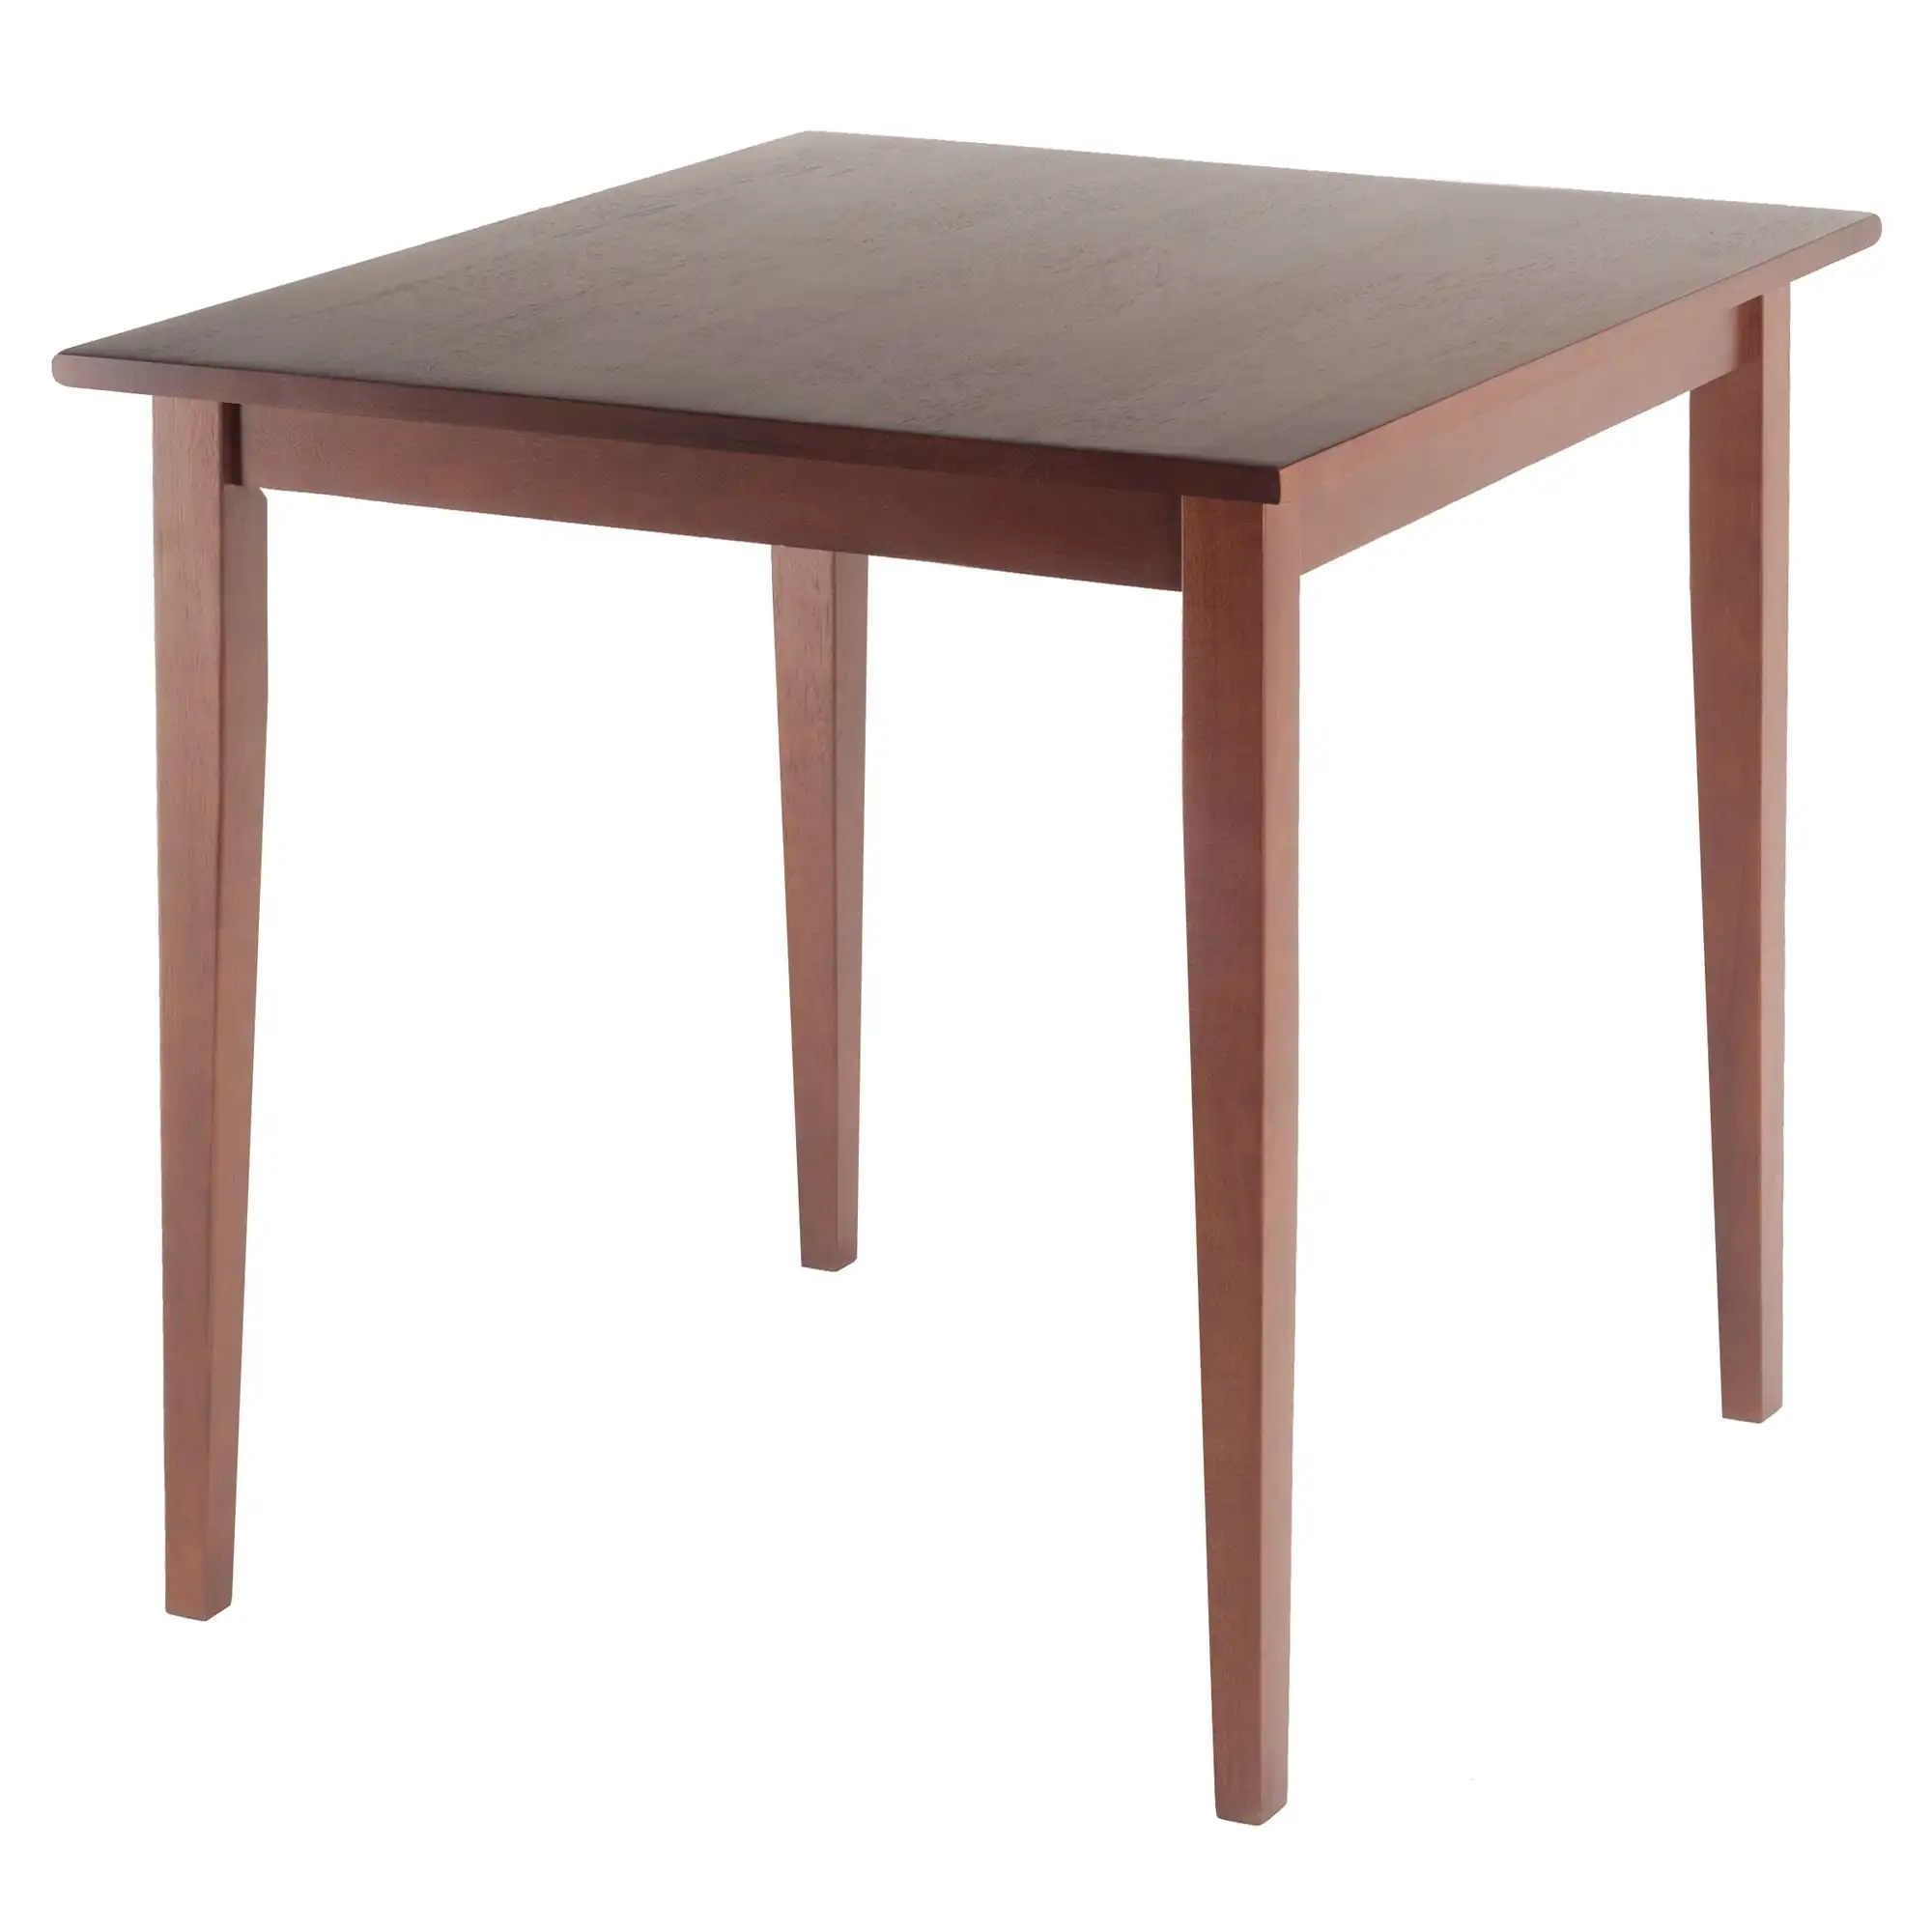 Обеденный квадратный. Обеденный стол Версаль 2.2 орех. Стол квадратный. Стол квадратный деревянный. Стол обеденный прямоугольный.